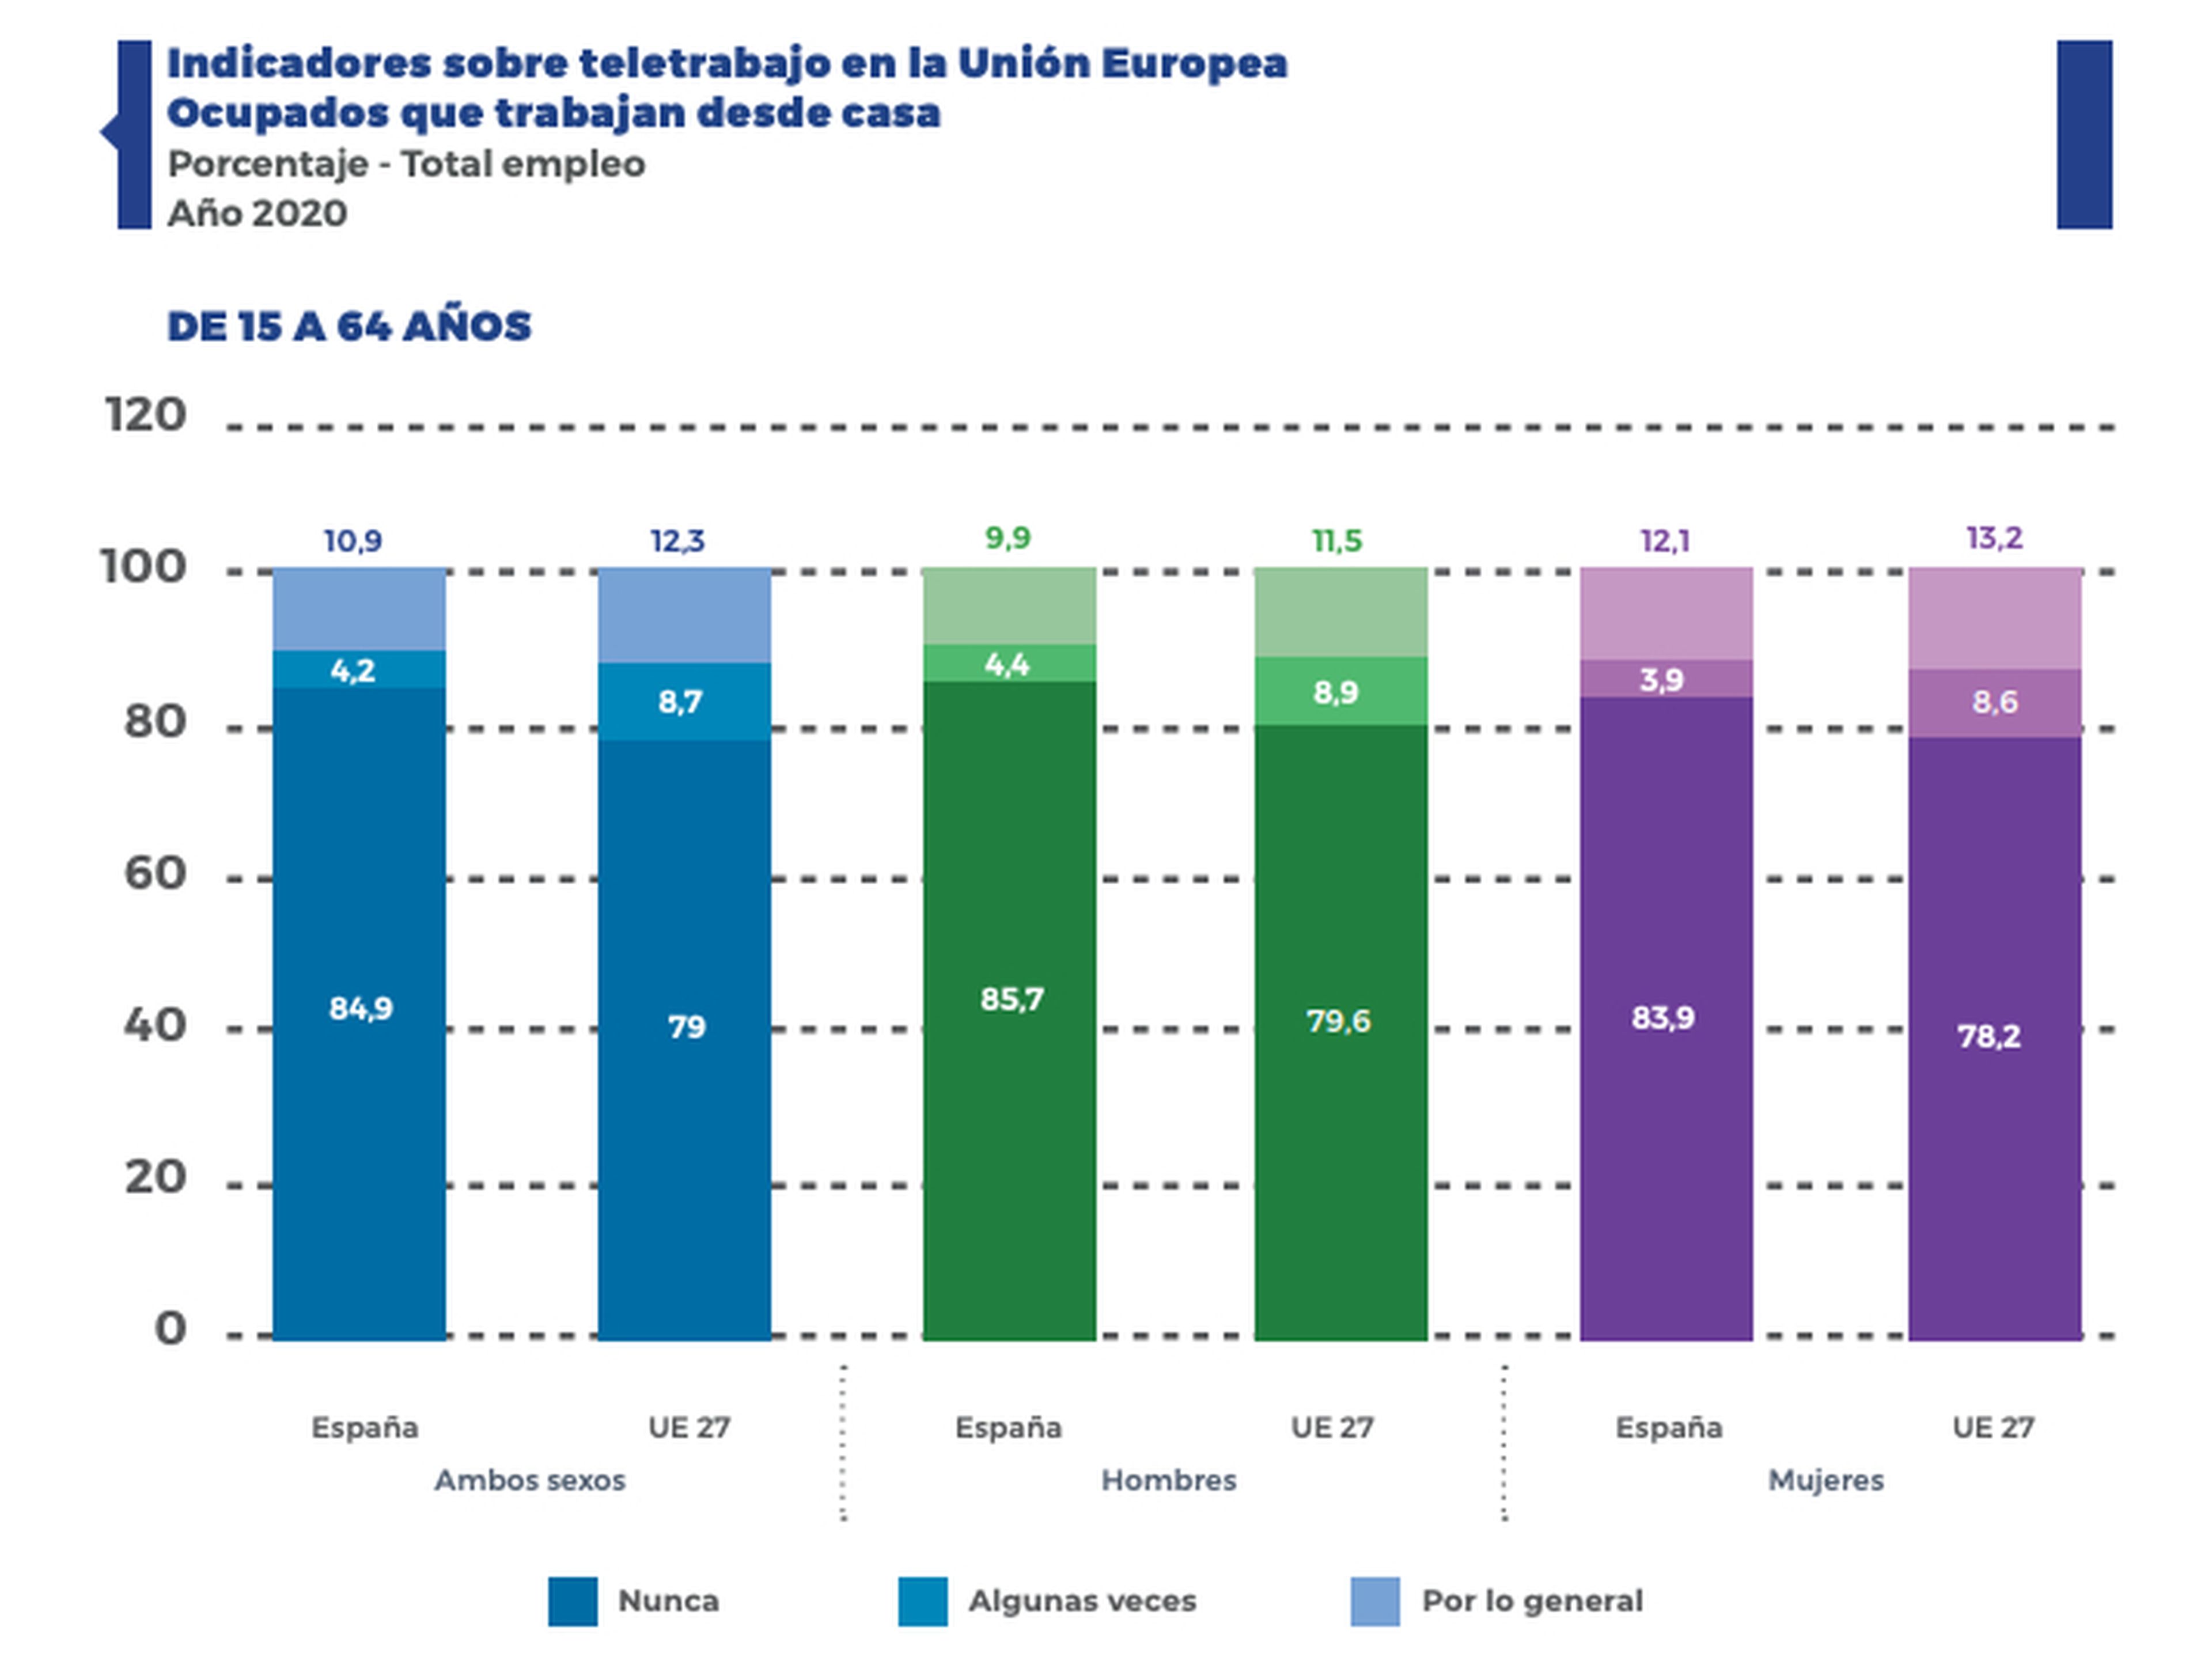 Porcentaje de trabajadores que han teletrabajado de forma habitual, esporádica o nunca en España y la UE durante 2020